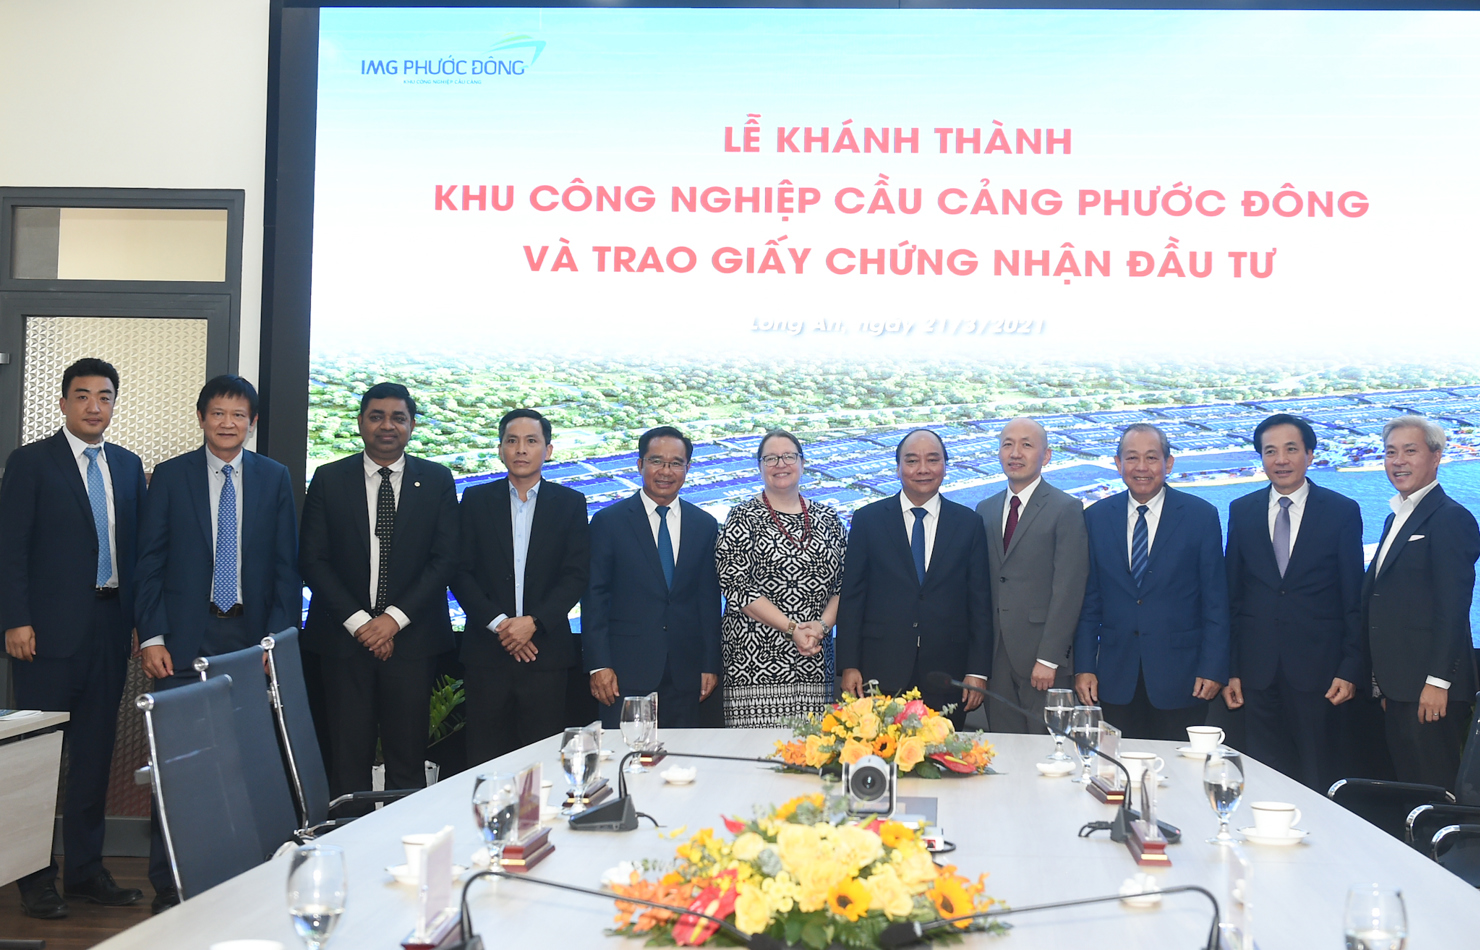 Thủ tướng Chính phủ Nguyễn Xuân Phúc chụp ảnh lưu niệm cùng các nhà ngoại giao và đại diện Tập đoàn năng lượng GS, tập đoàn Alibaba. Nguồn: chinhphu.vn